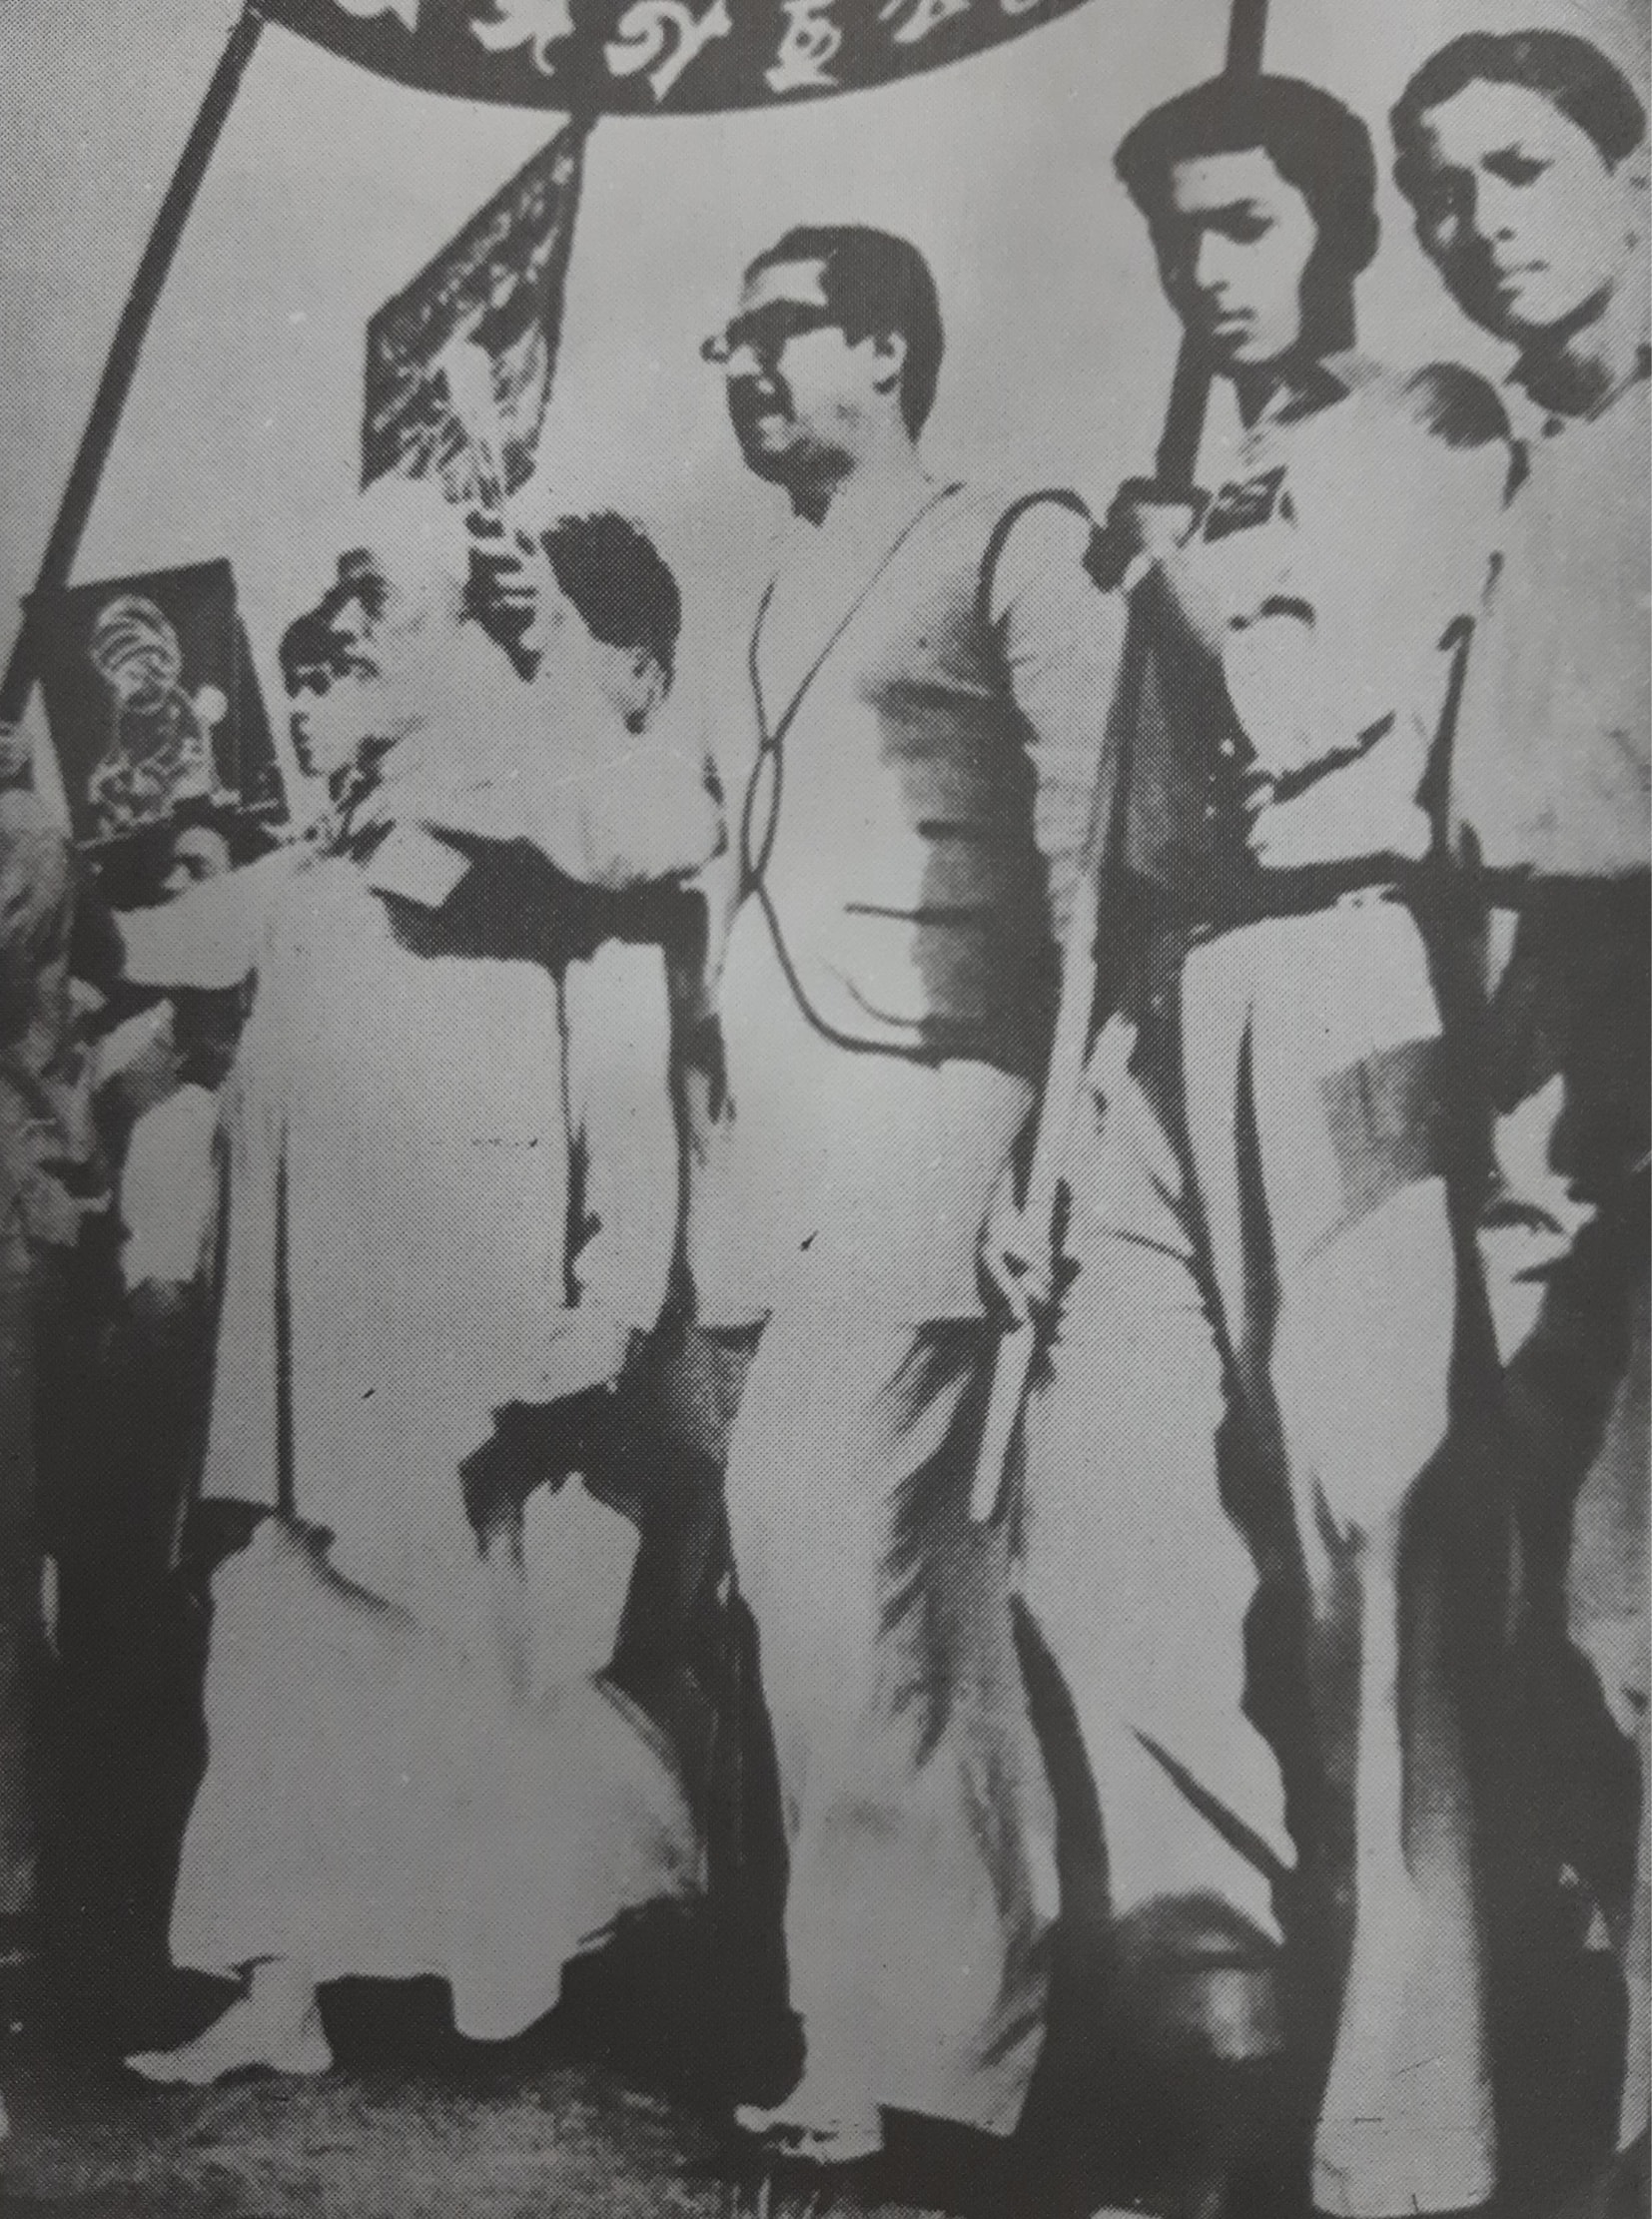 ১৯৫৩ সালে একুশের প্রথম প্রভাতফেরীতে বঙ্গবন্ধু ও ভাষানী